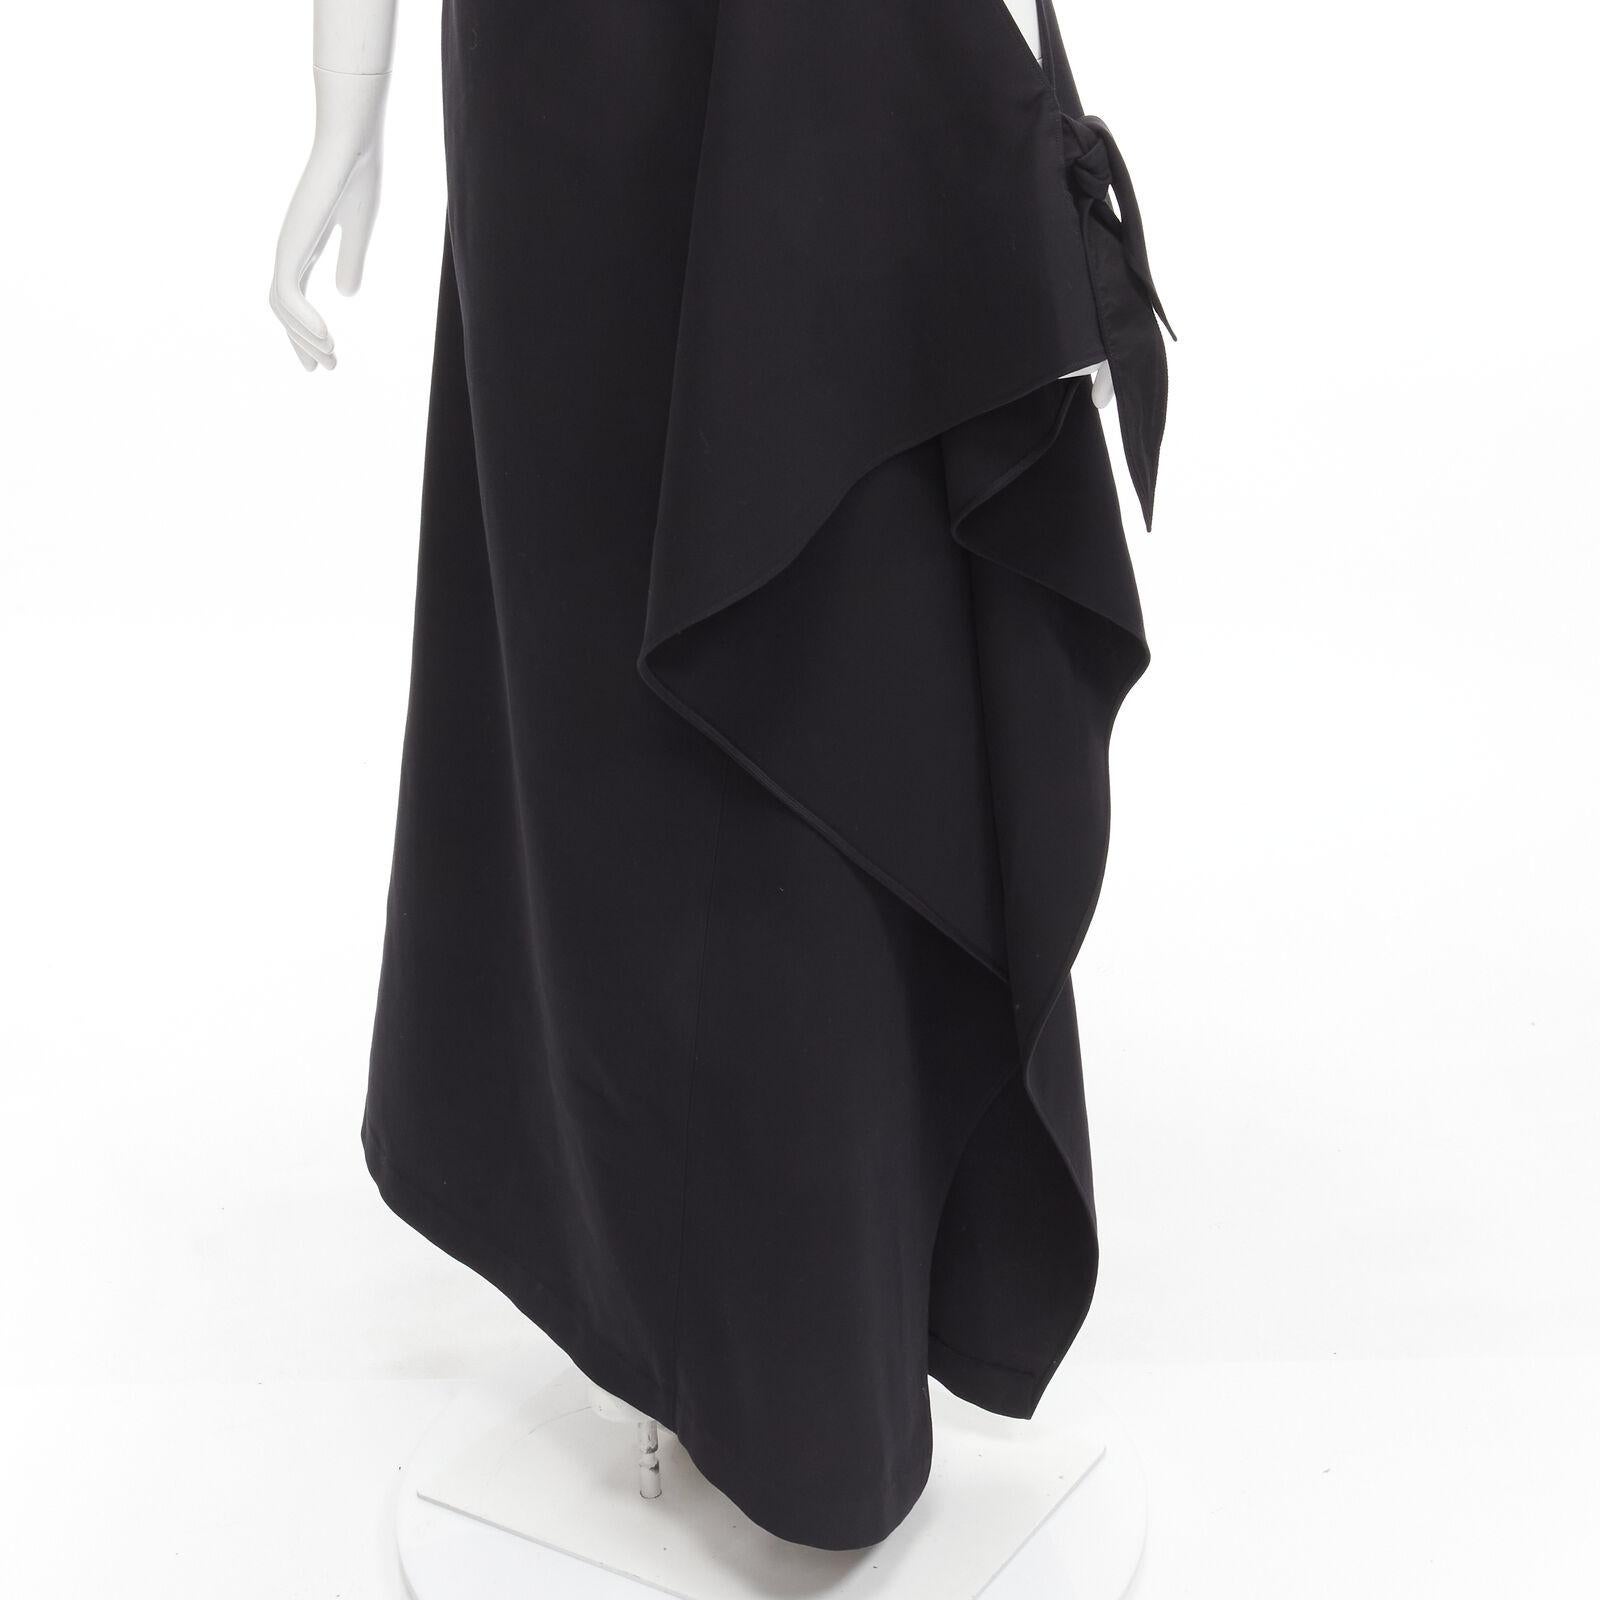 ROSIE ASSOULIN 2015 Runway black cold shoulder high slit halter gown dress US2 S For Sale 4